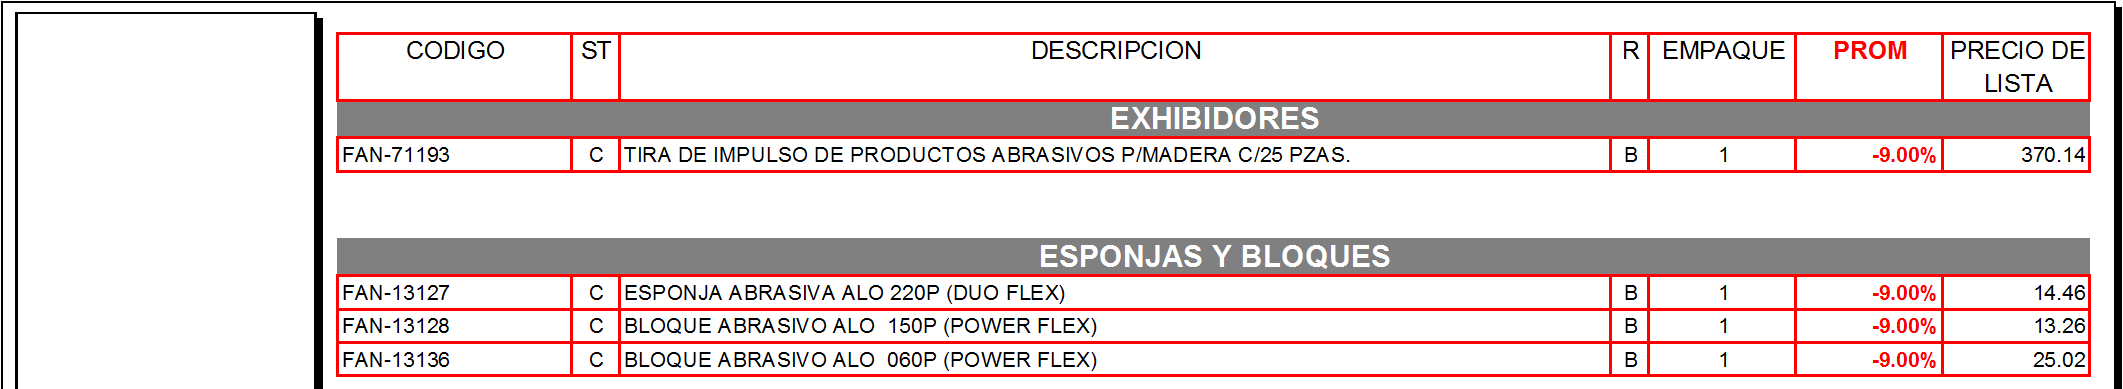 EXHIBIDORES FAN-71193 C TIRA DE IMPULSO DE PRODUCTOS ABRASIVOS P/MADERA C/25 PZAS. B 1-9.00% 370.14 ESPONJAS Y BLOQUES FAN-13127 C ESPONJA ABRASIVA ALO 220P (DUO FLEX) B 1-9.00% 14.